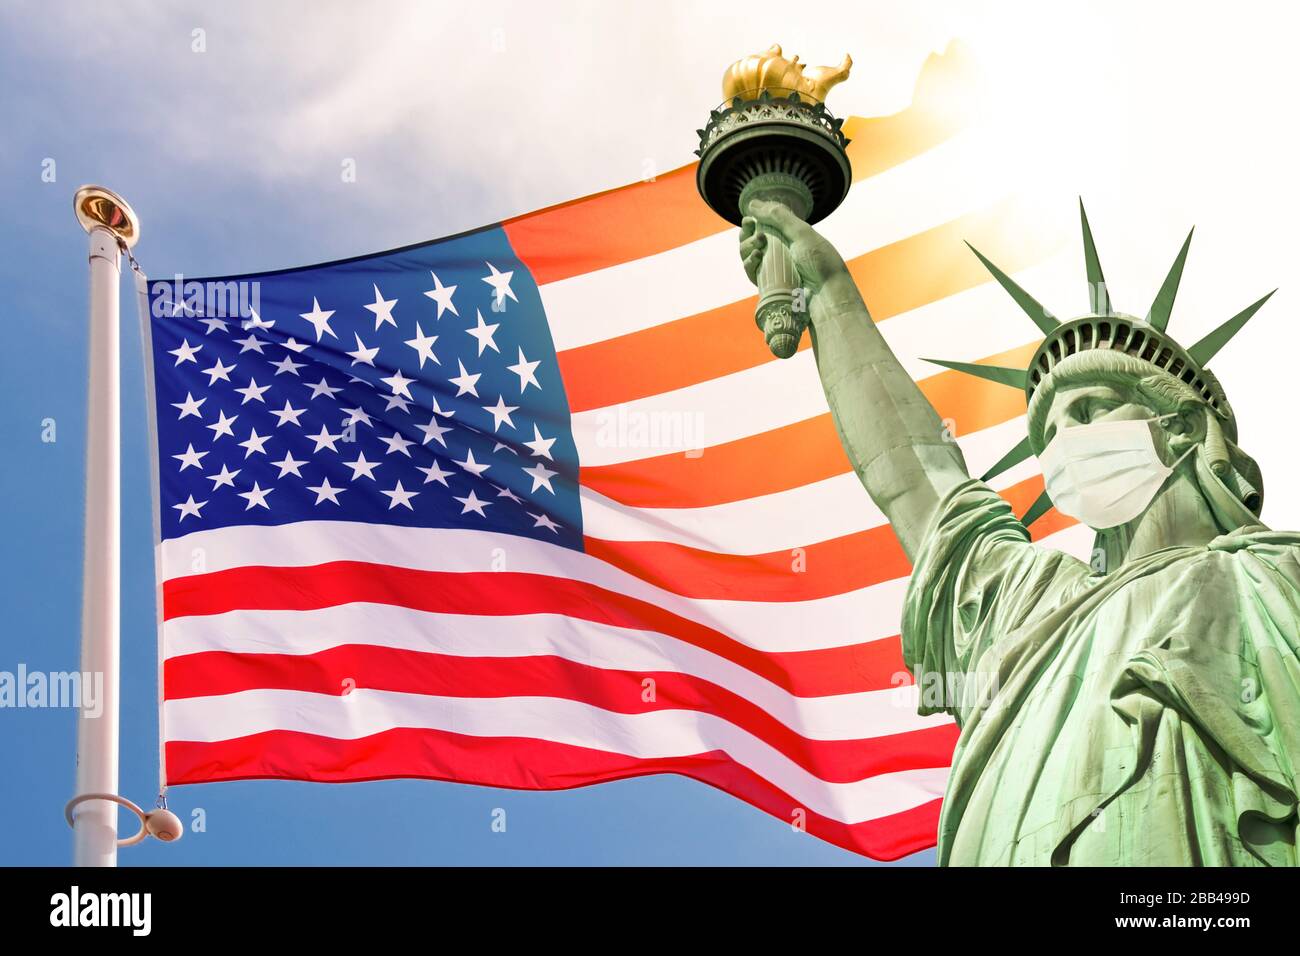 Statua della libertà indossando una maschera chirurgica, sfondo americano della bandiera degli Stati Uniti. Nuovo coronavirus, covid-19 a New York e USA crisi epidemica concetto Foto Stock